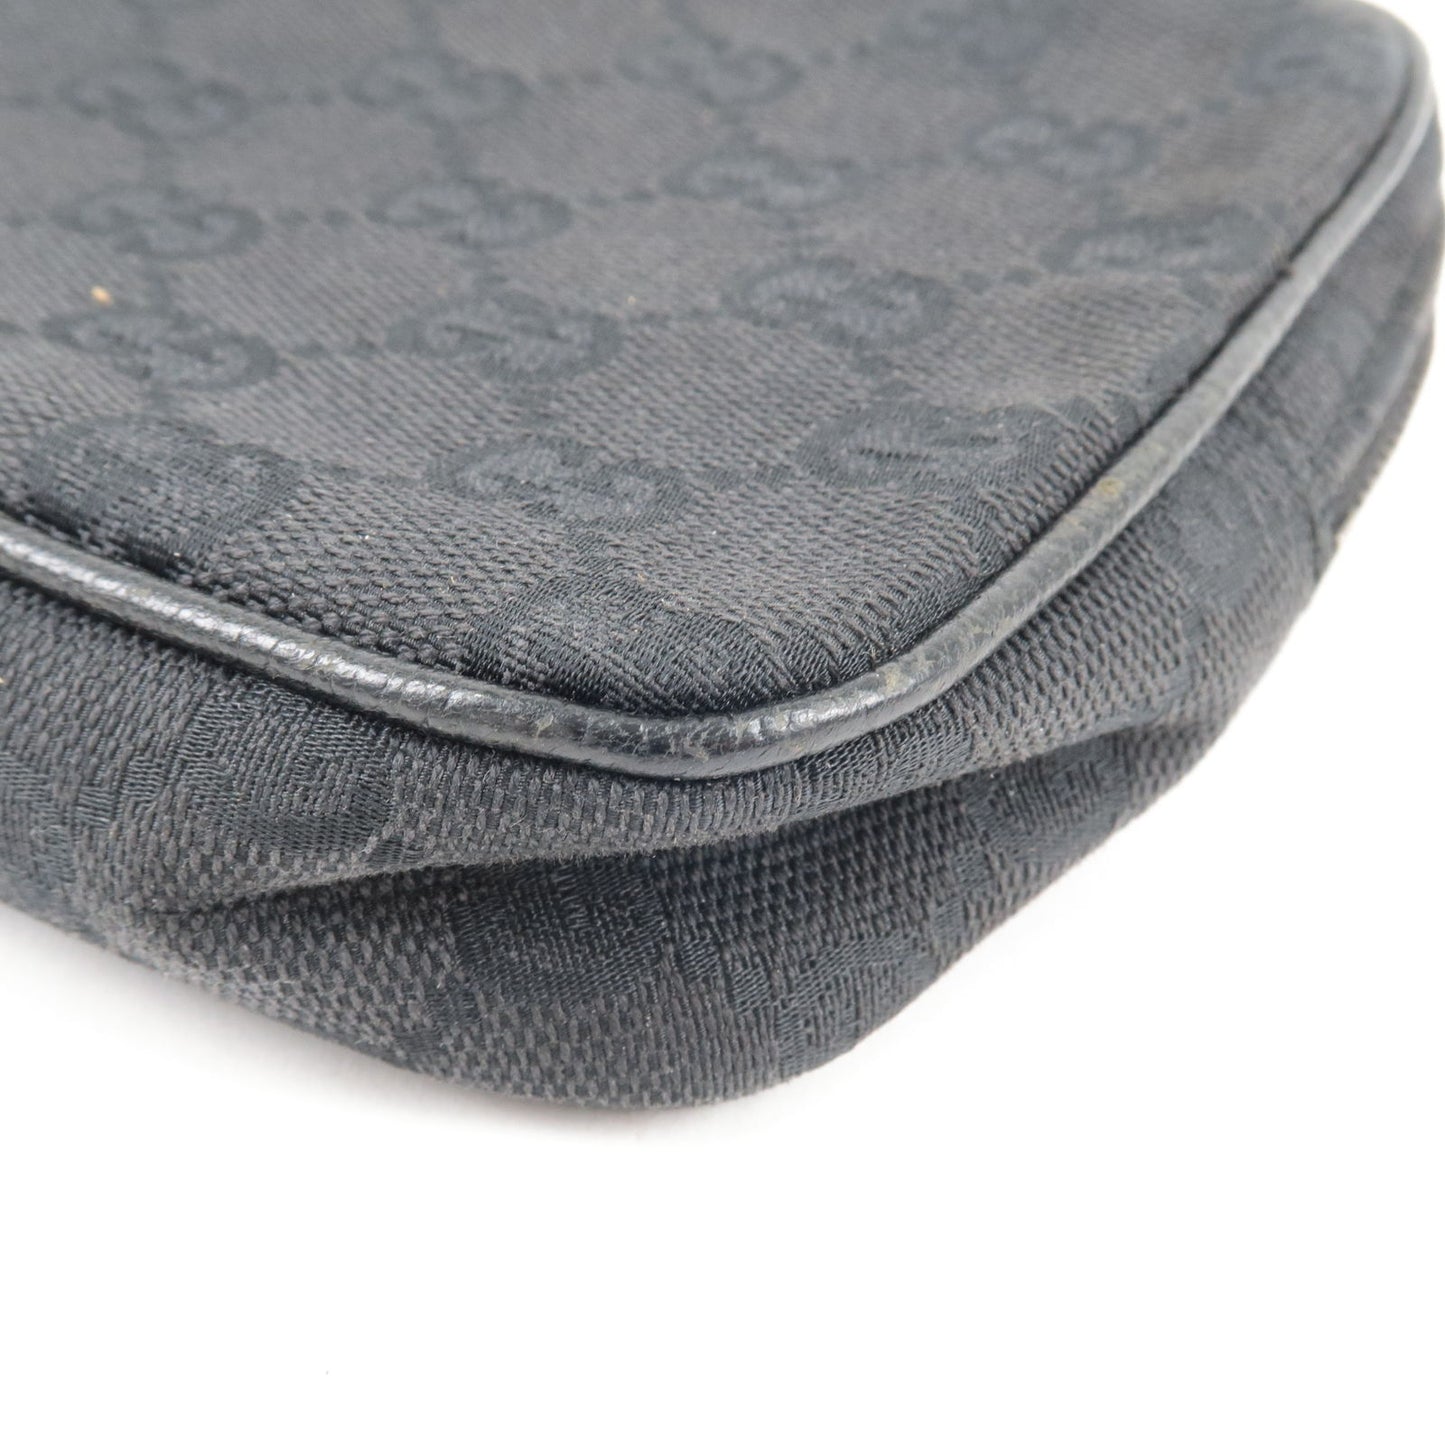 GUCCI GG Canvas Leather Shoulder Bag Pouch Black 120975